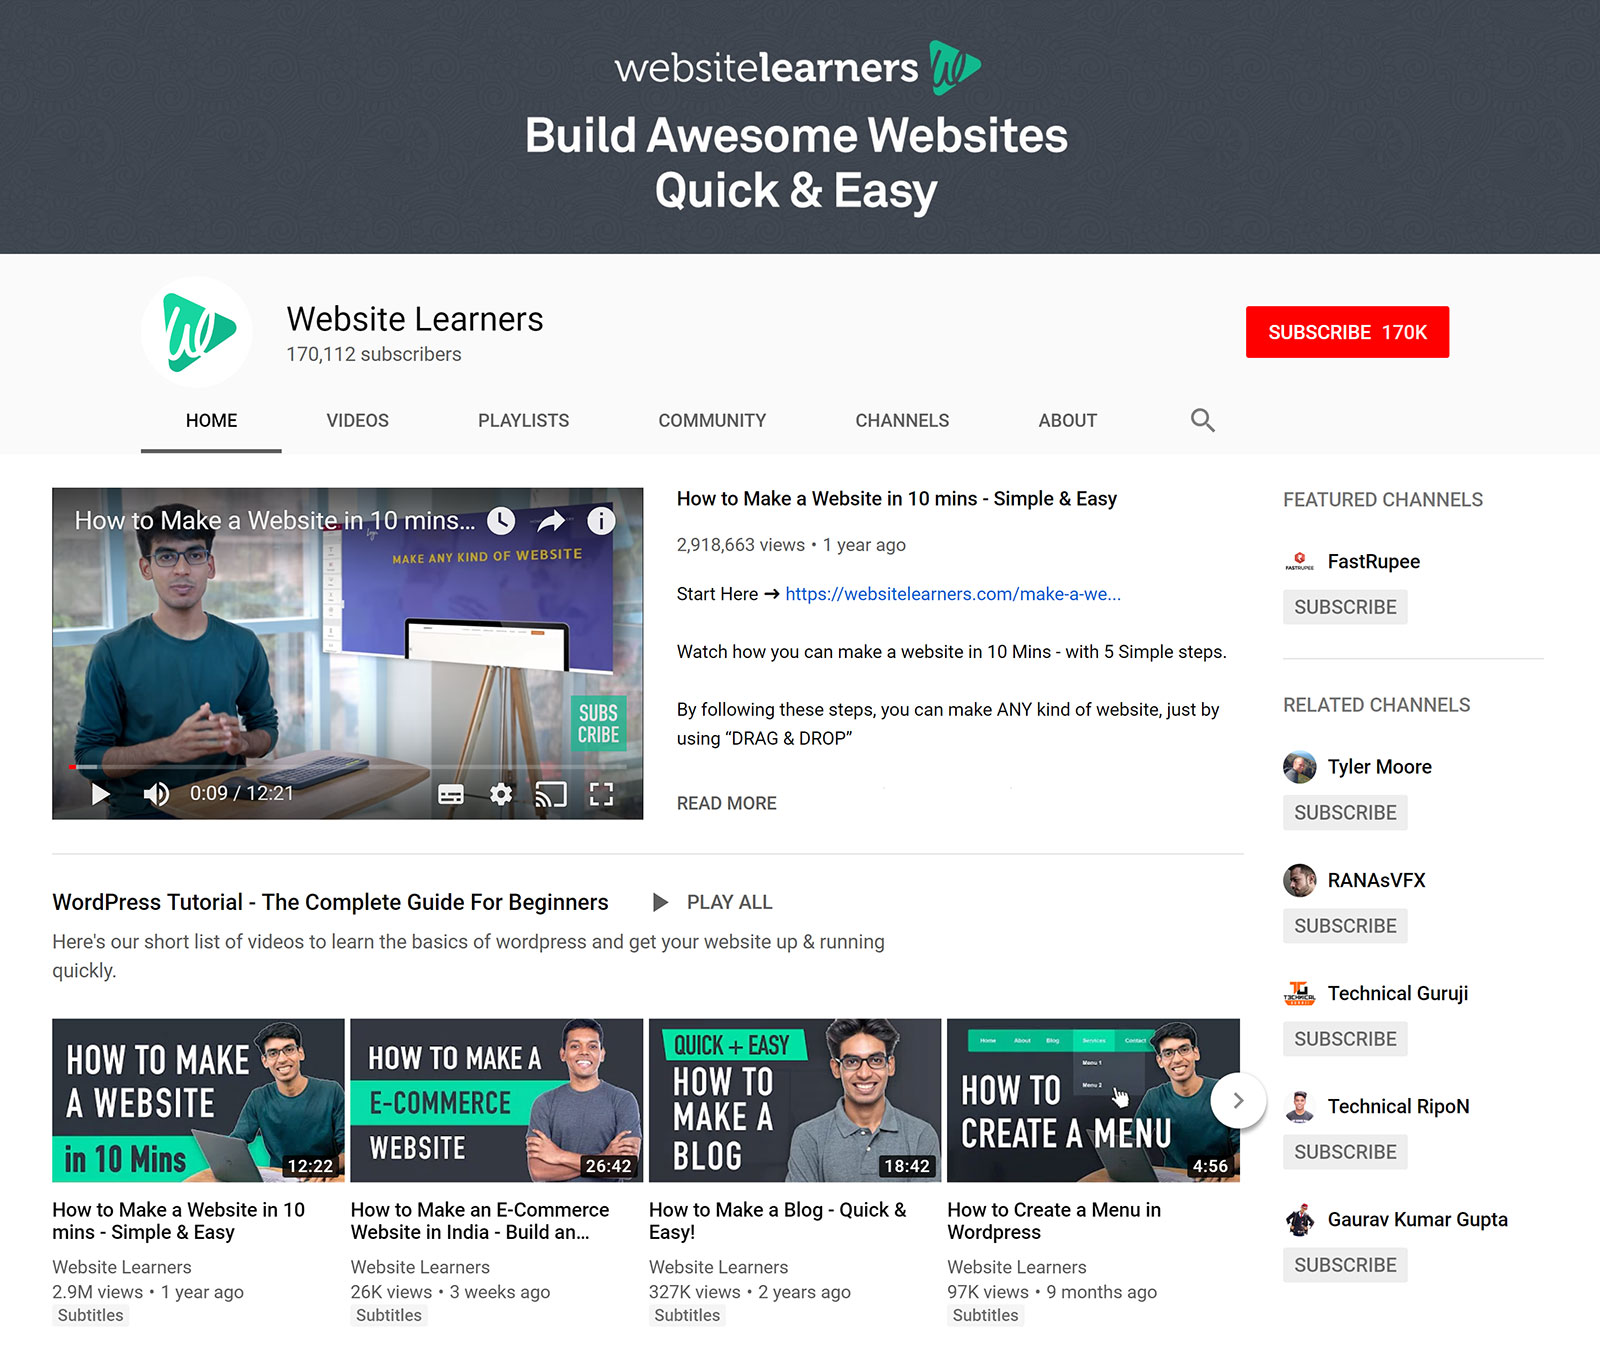 Website Learners - YouTube Channel